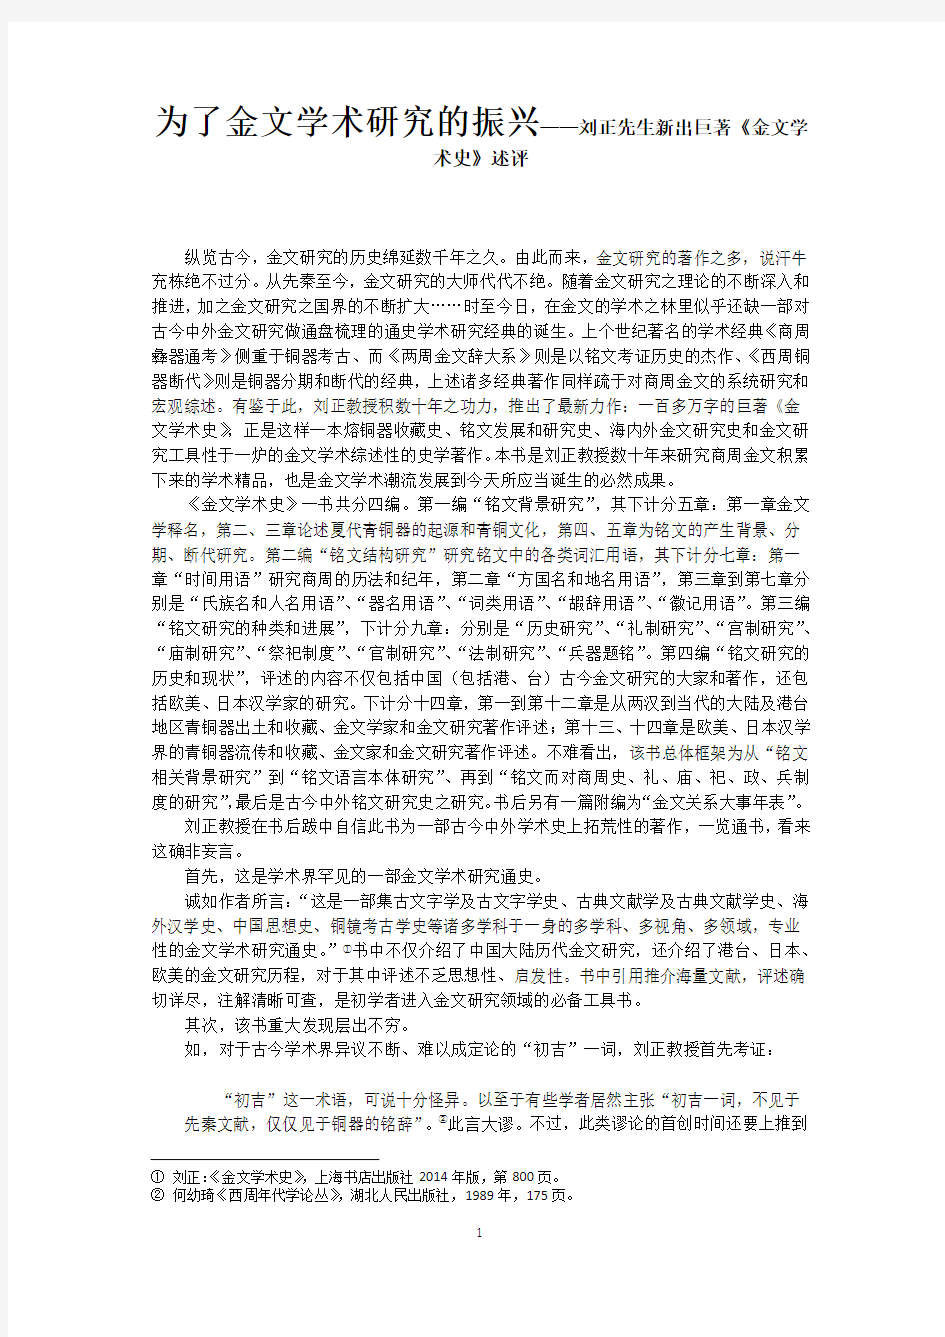 为了金文学术研究的振兴——刘正先生新出巨著《金文学术史》述评